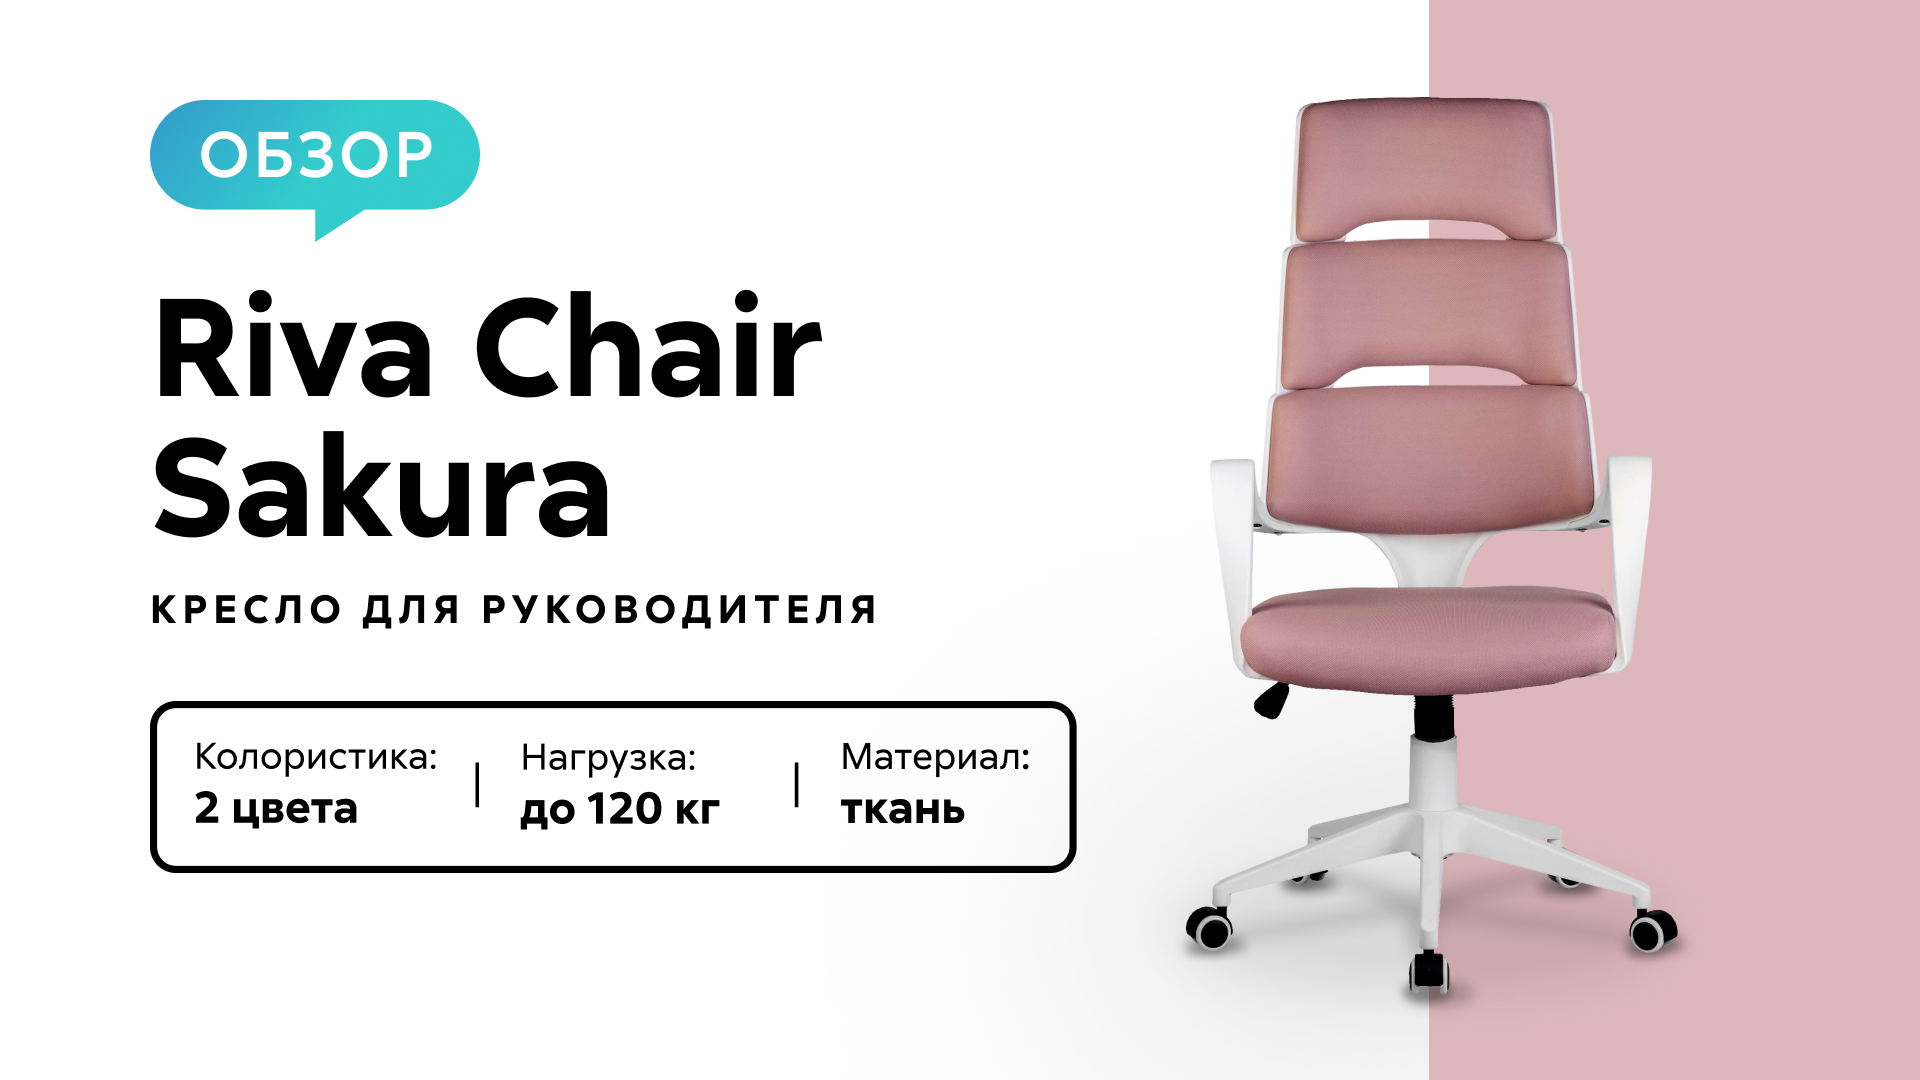 Обзор кресла для руководителя Riva Chair Sakura